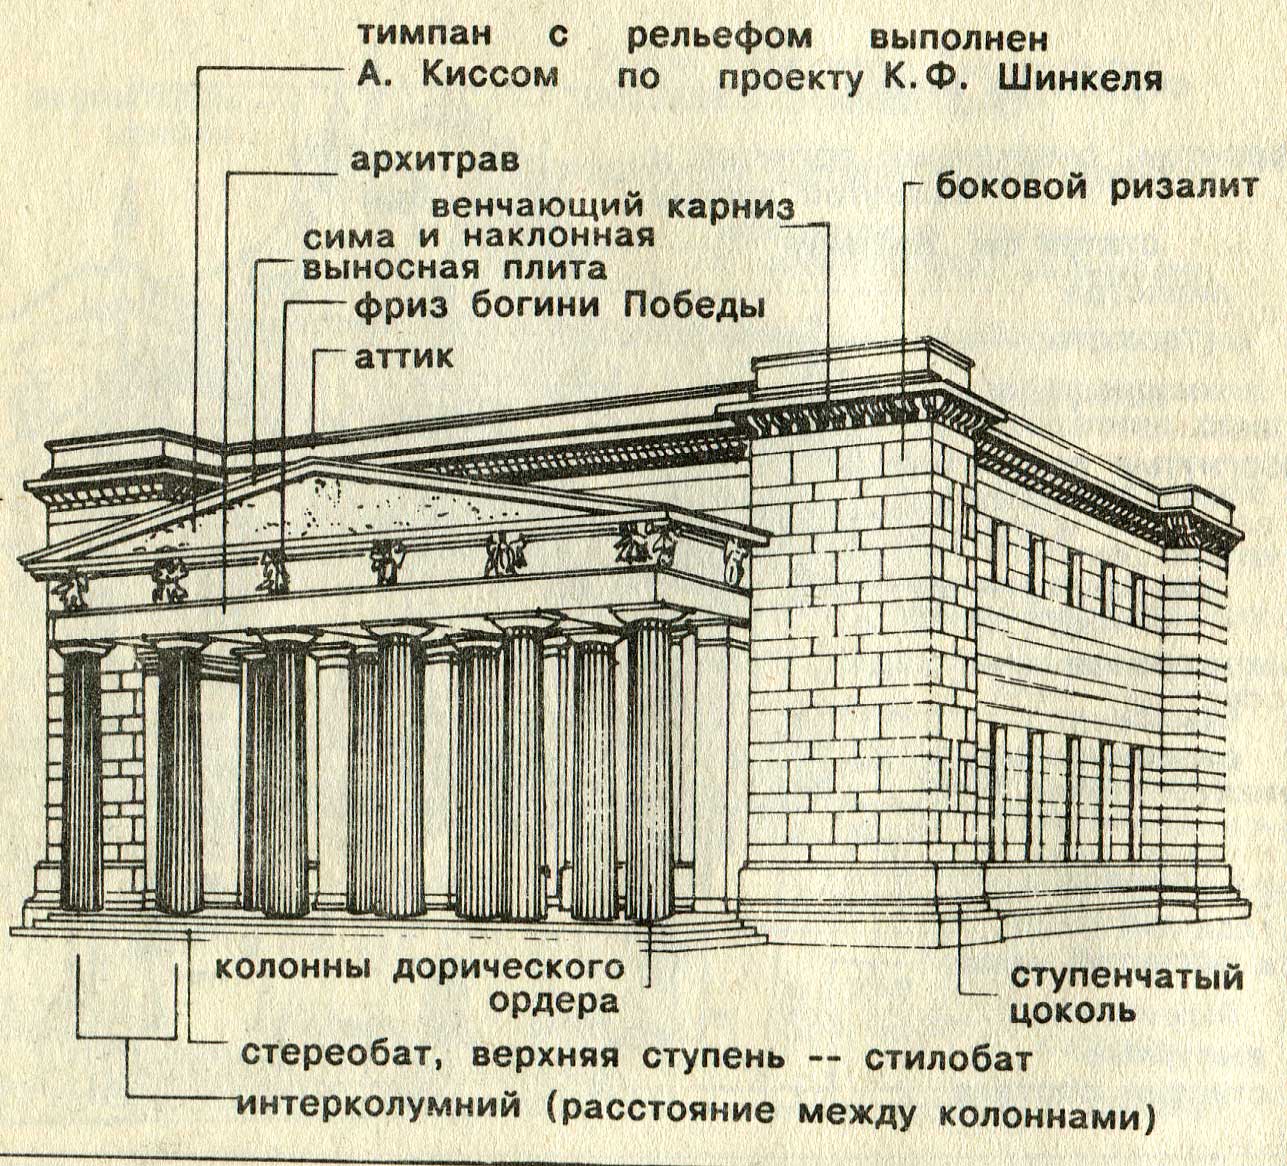 Схема строения зданий эпохи классицизма